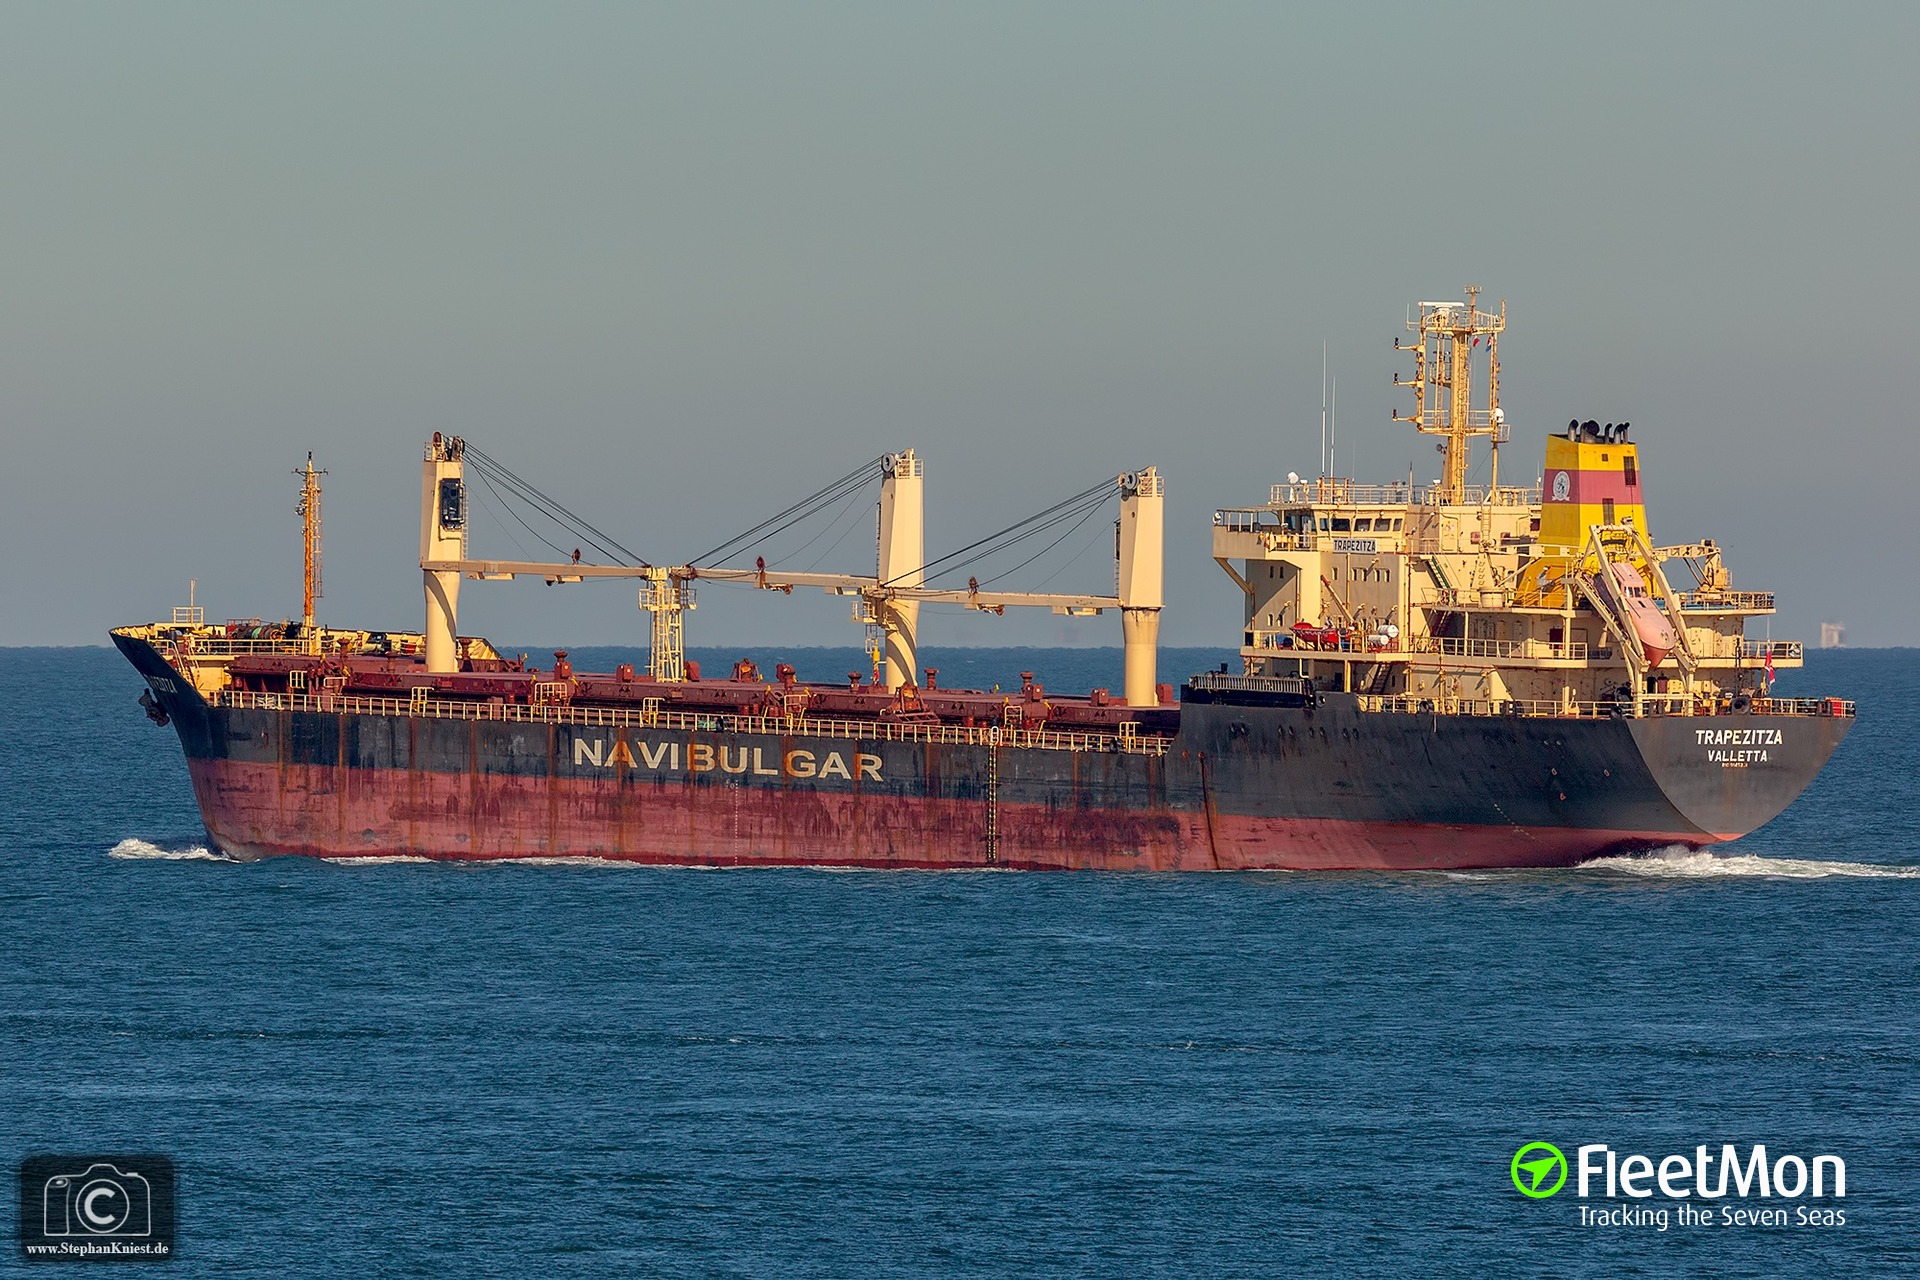 Μέλος του πληρώματος φορτηγού πλοίου πέθανε από κορονοϊό - e-Nautilia.gr | Το Ελληνικό Portal για την Ναυτιλία. Τελευταία νέα, άρθρα, Οπτικοακουστικό Υλικό